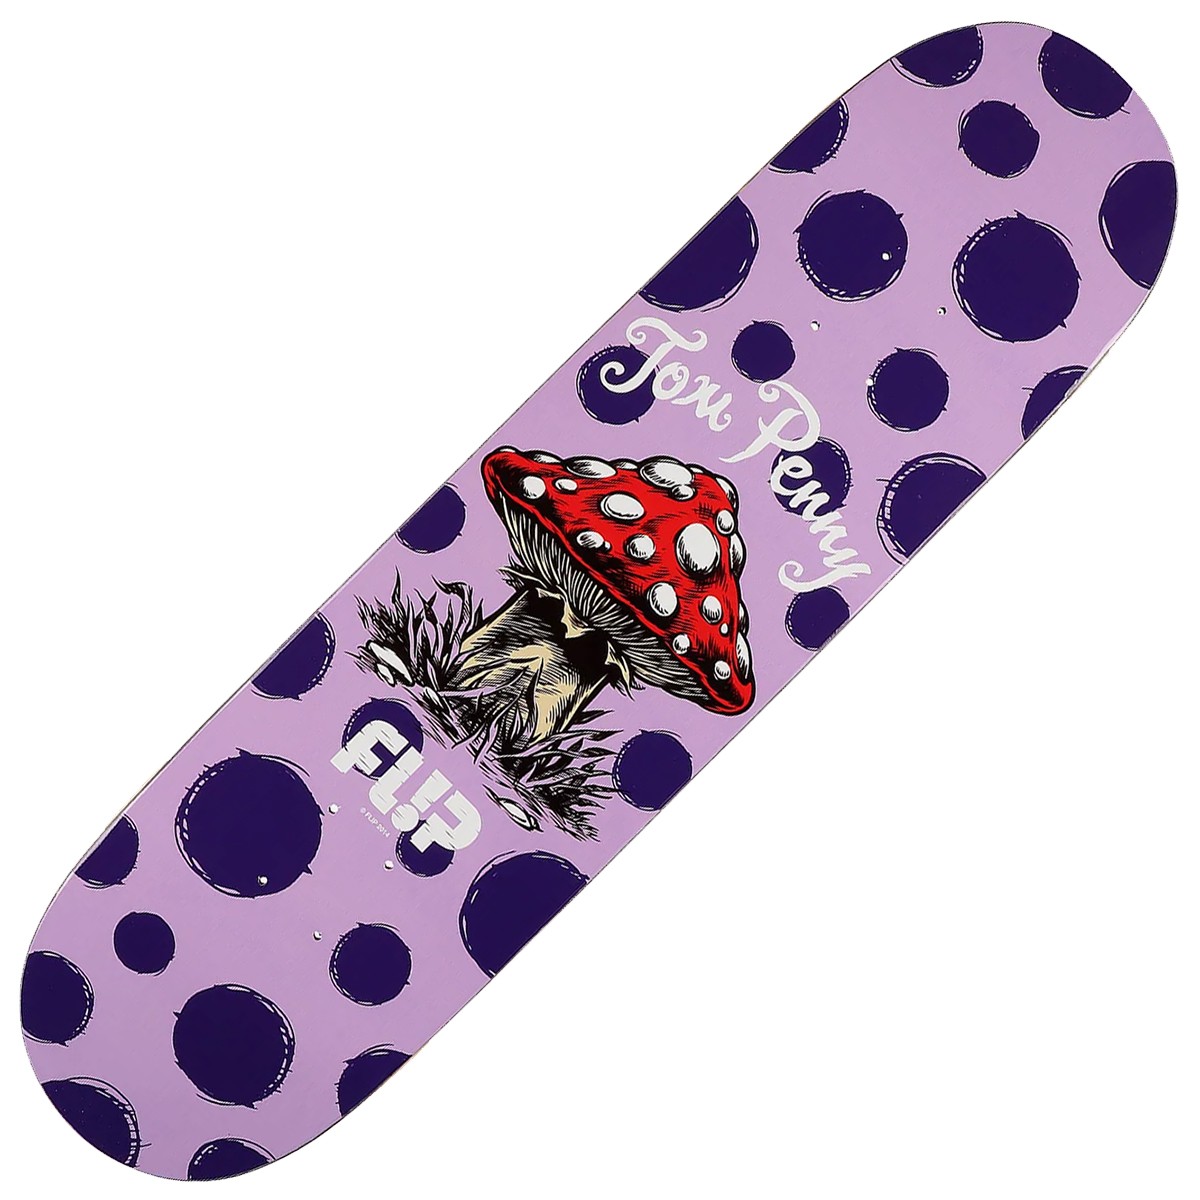 FLIP “Dots Reboot” Tom Penny Pro skateboard deck 8.13